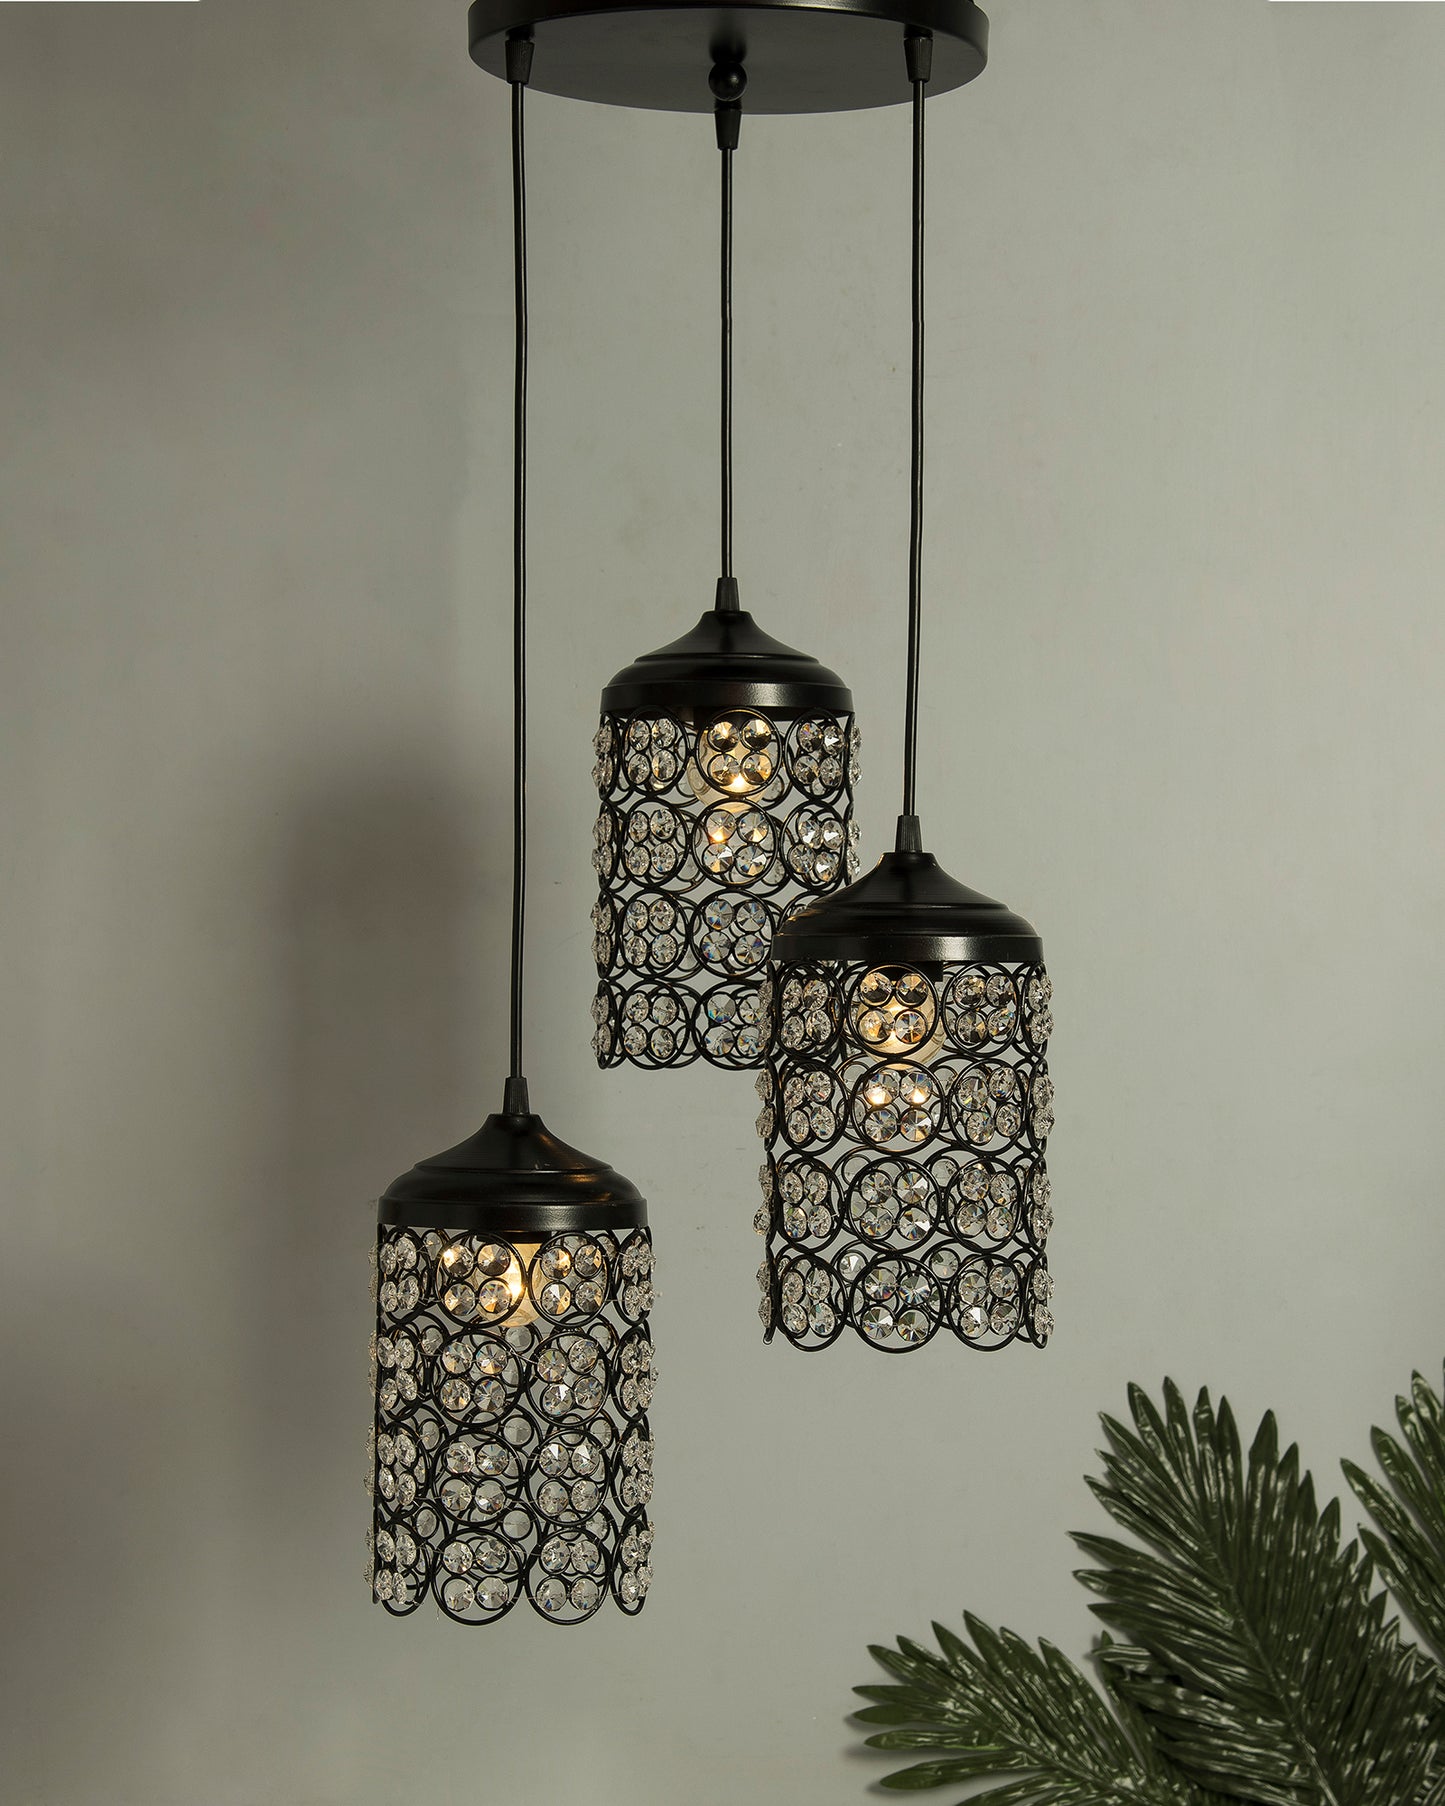 3-Lights Round Cluster Cylinder Chandelier Quad Crystal Hanging Light, Decorative, Black, Kitchen Area and Dining Room Light, LED/Filament Light